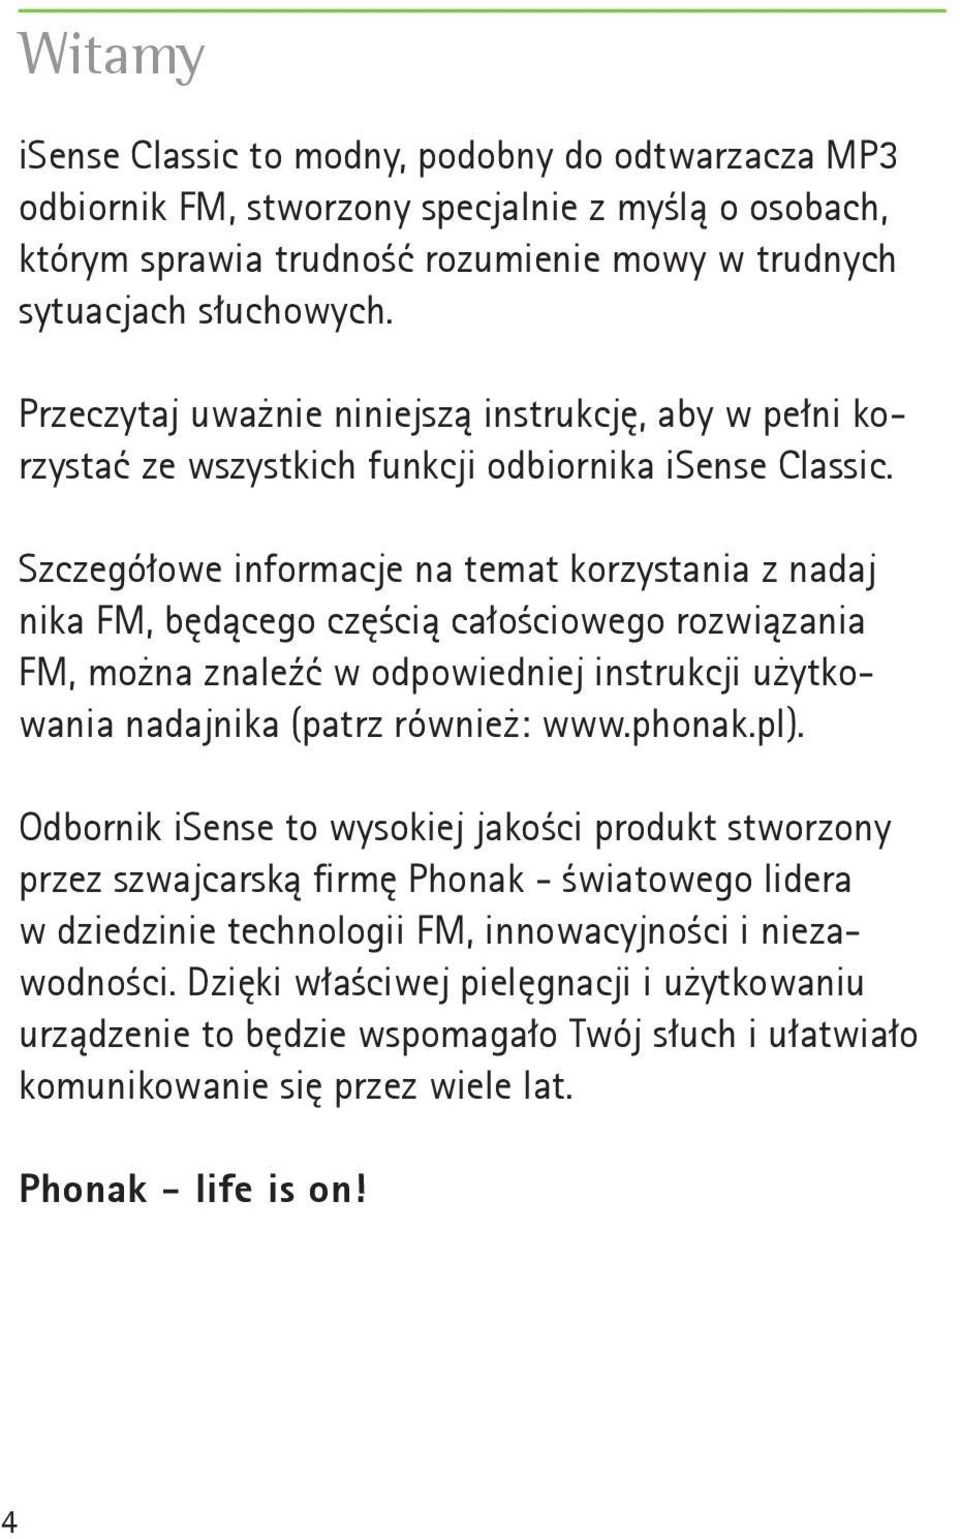 Szczegółowe informacje na temat korzystania z nadaj nika FM, będącego częścią całościowego rozwiązania FM, można znaleźć w odpowiedniej instrukcji użytkowania nadajnika (patrz również: www.phonak.pl).